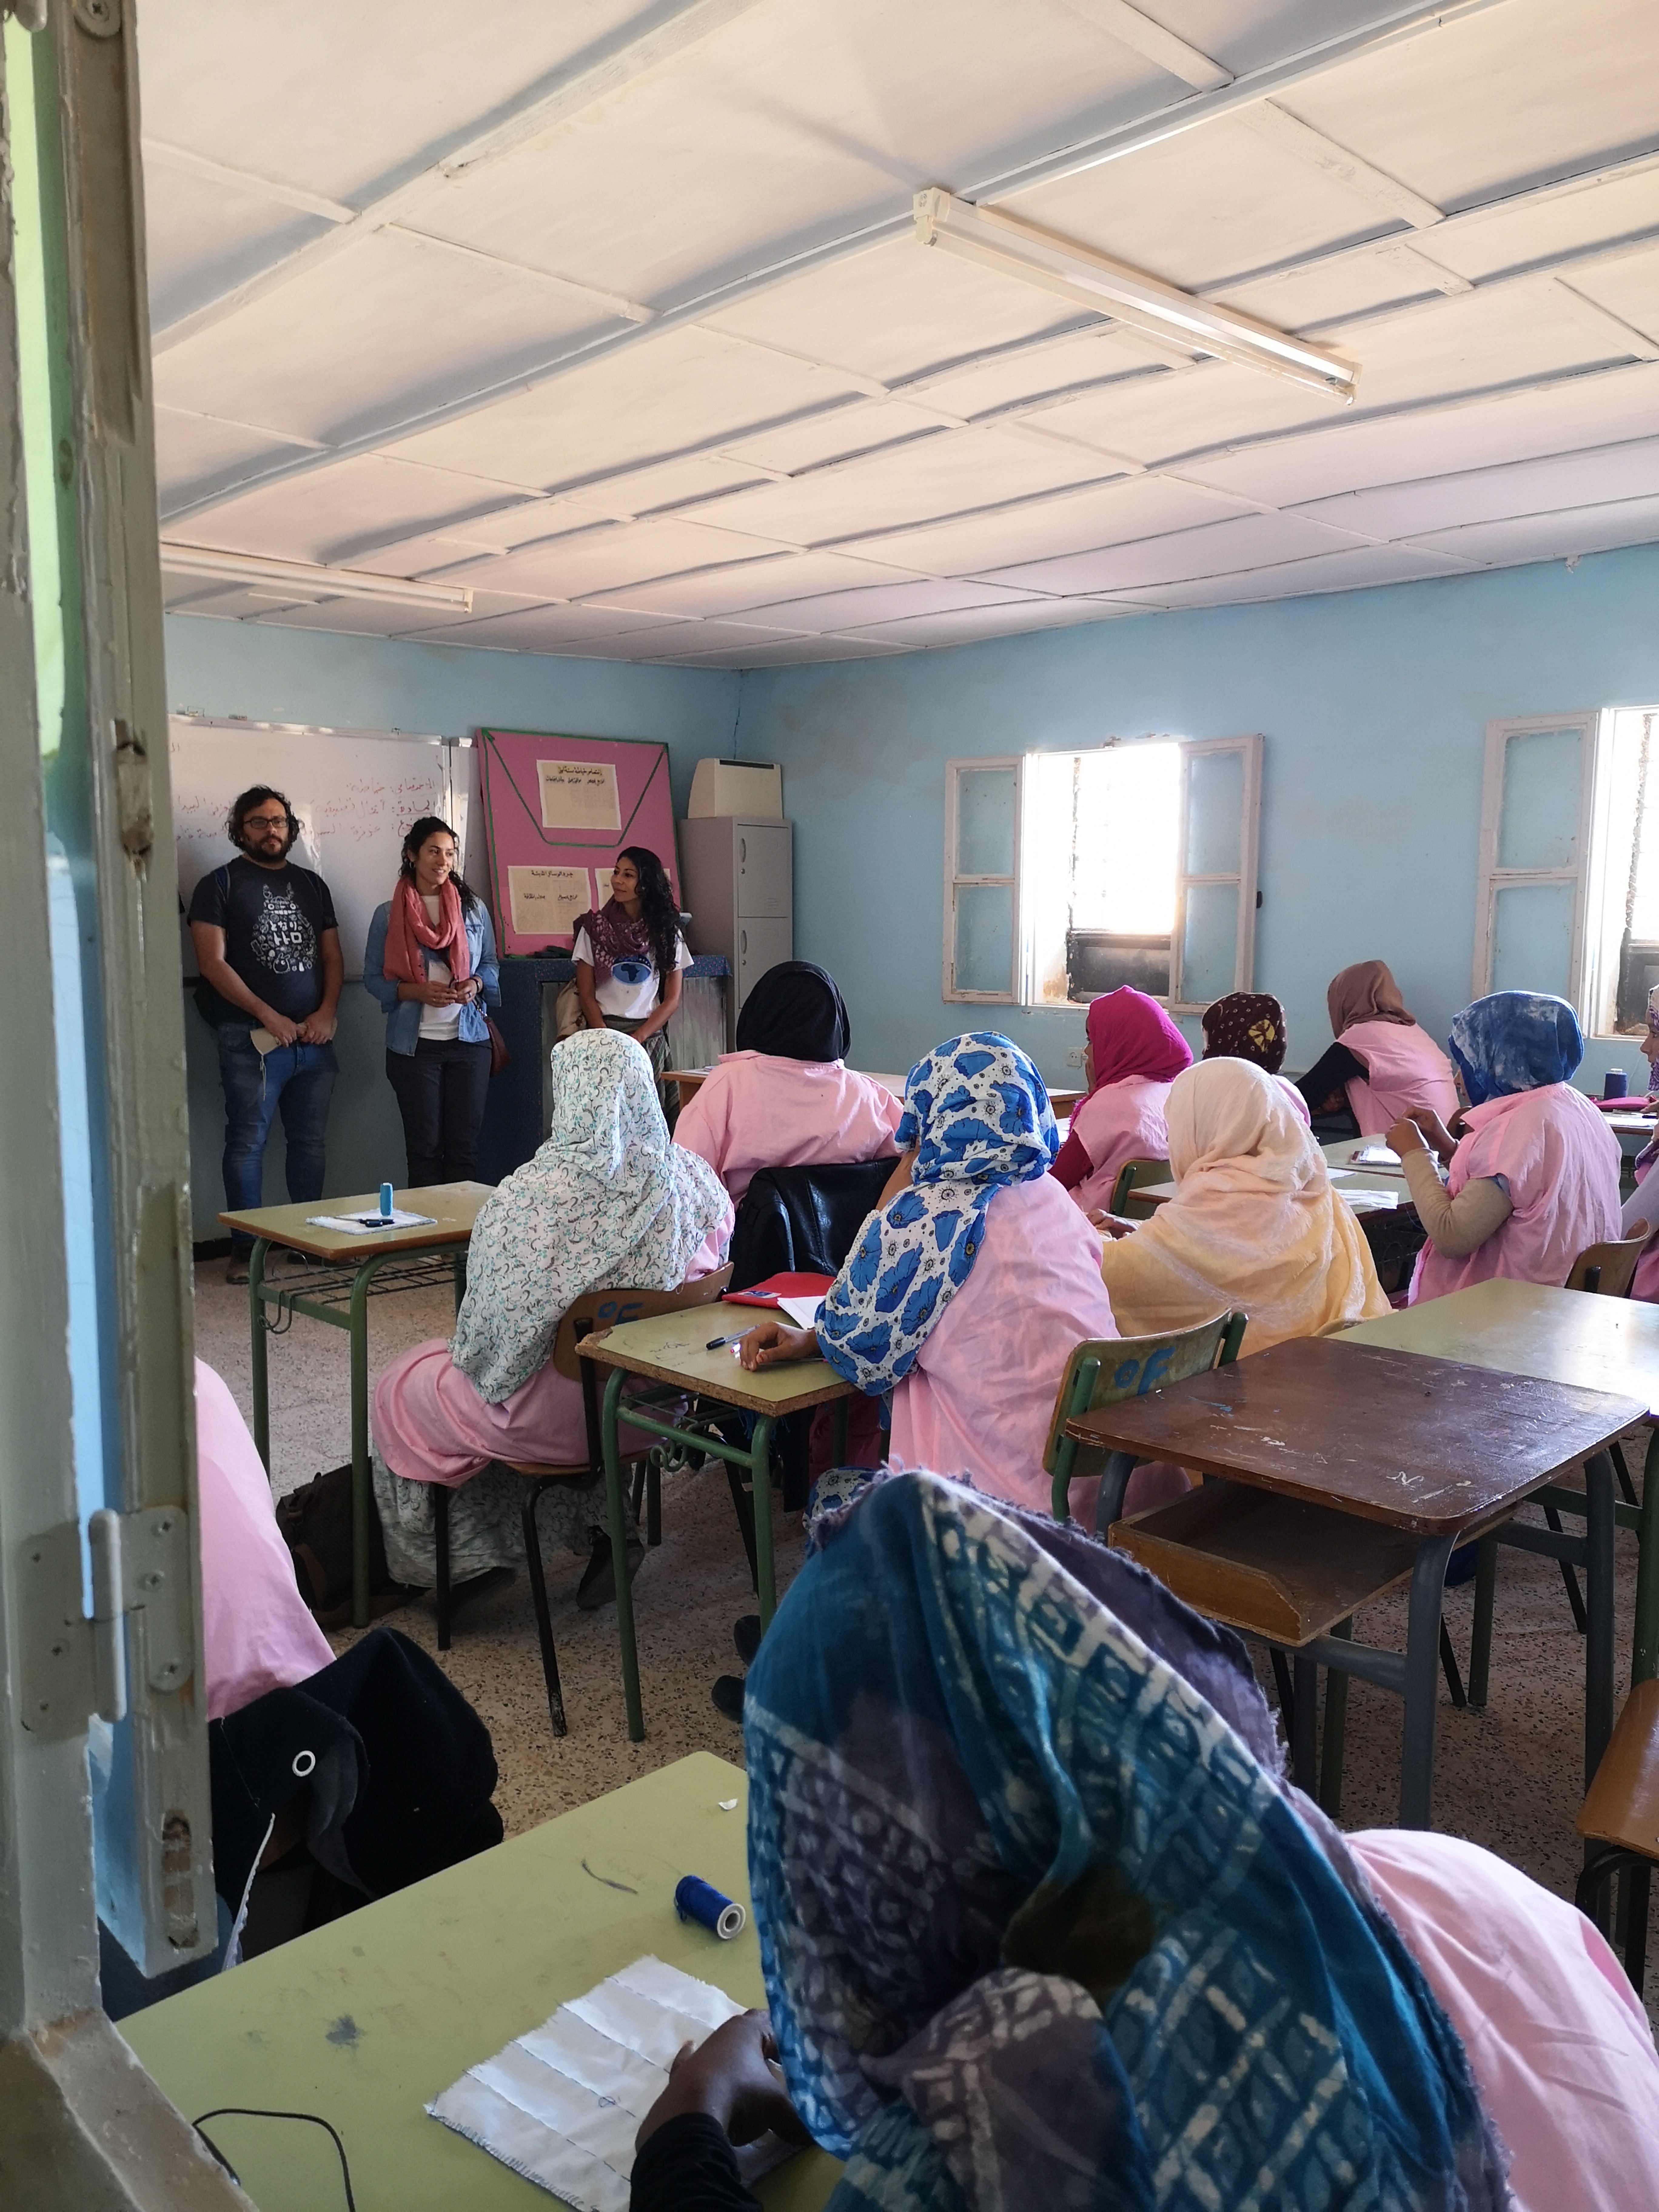 Visita a una escuela de mujeres en el campamento de El Aaiún. Crédito: F. Carrelli, D. Rodrigues, F. Sordo, GalileoMobile.